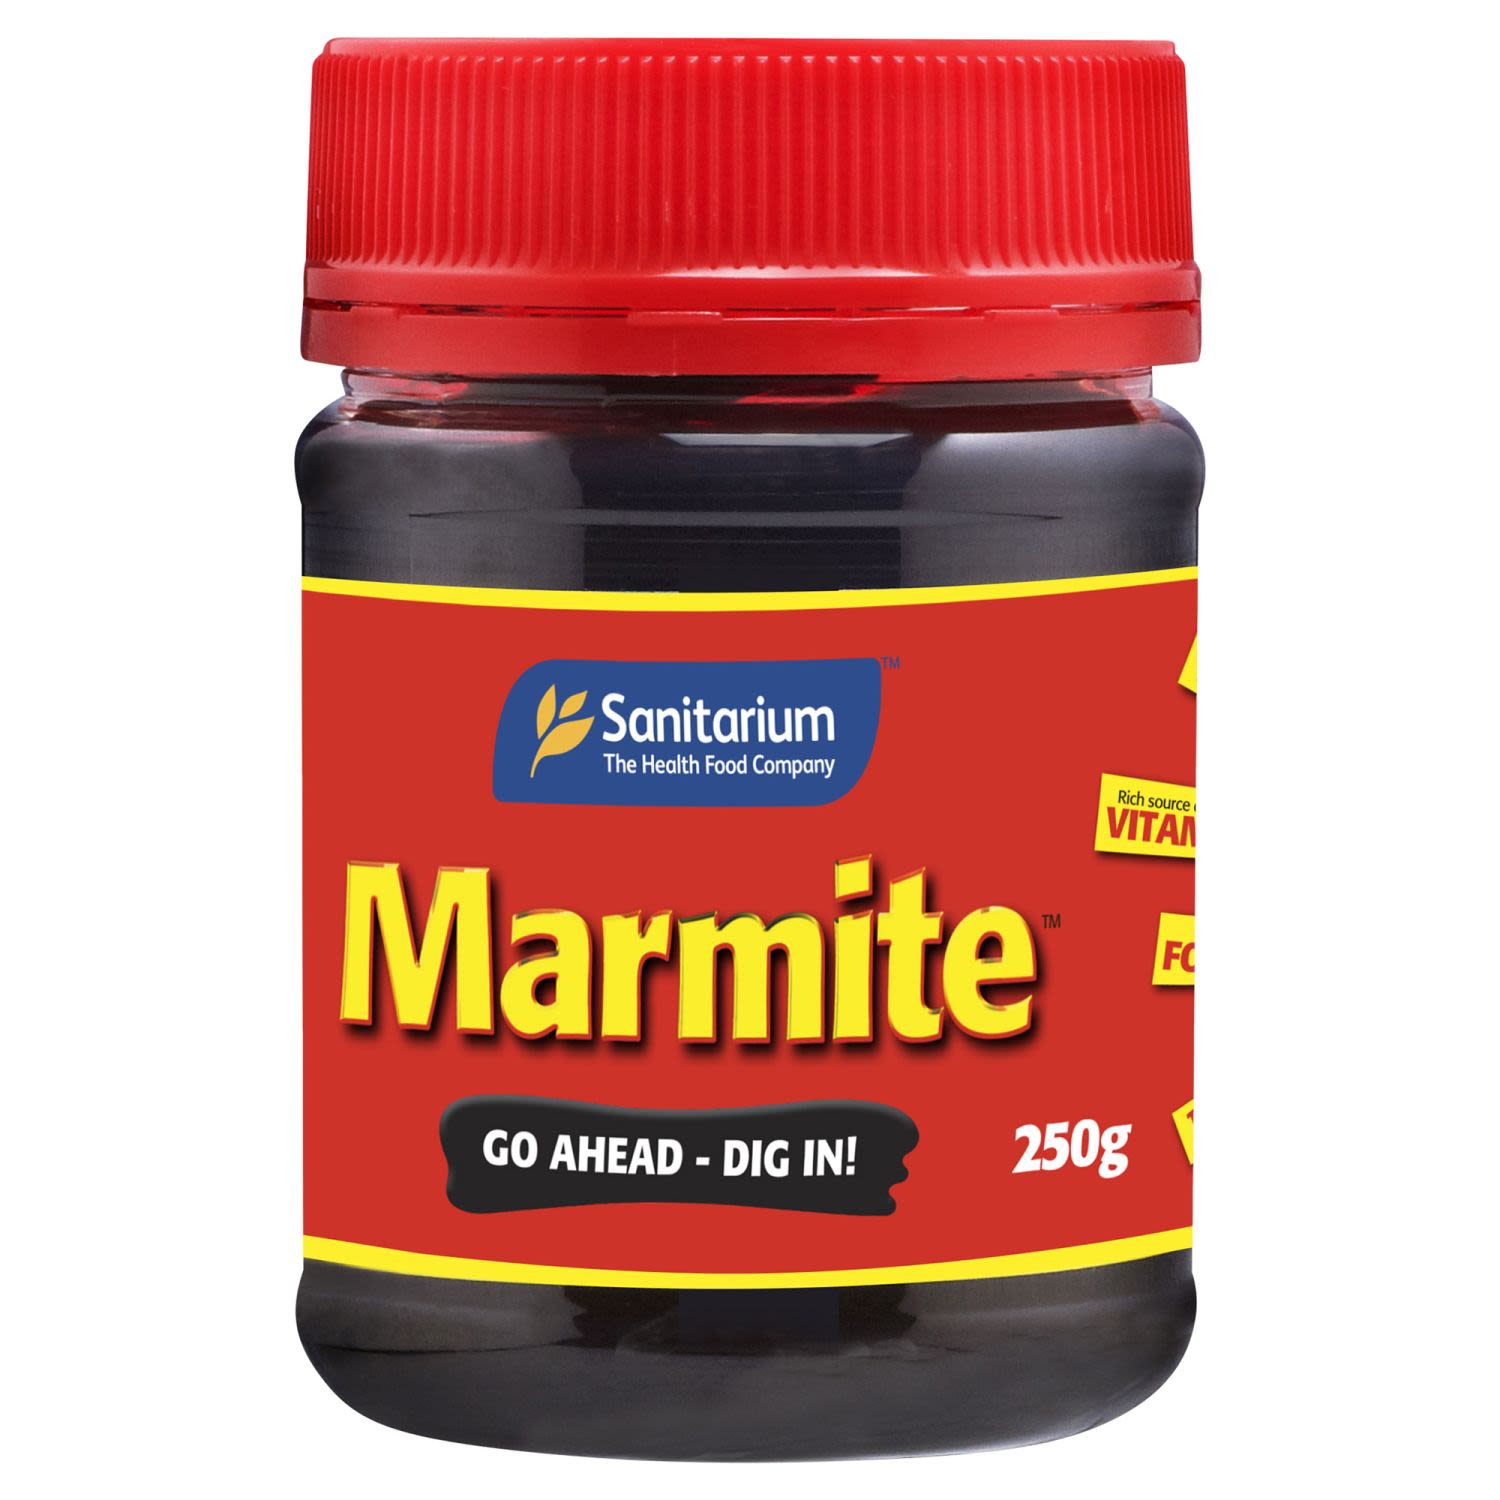 Sanitarium Marmite Yeast Spread, 250 Gram